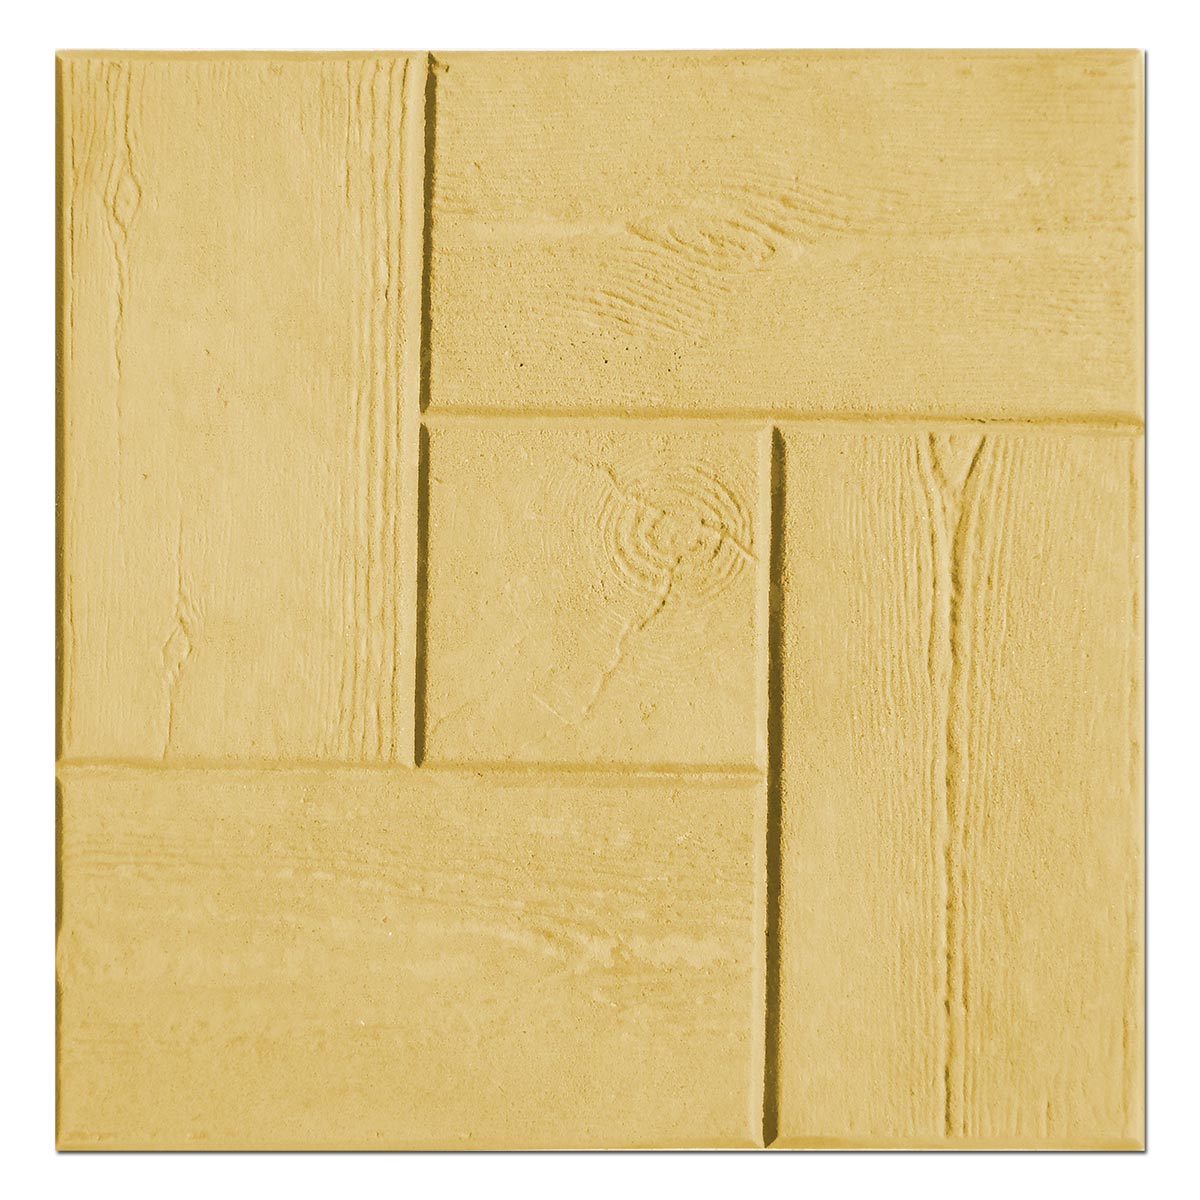 Gelbfarbe für Beton / Zement / Gips - 1kg - Farbprodukt